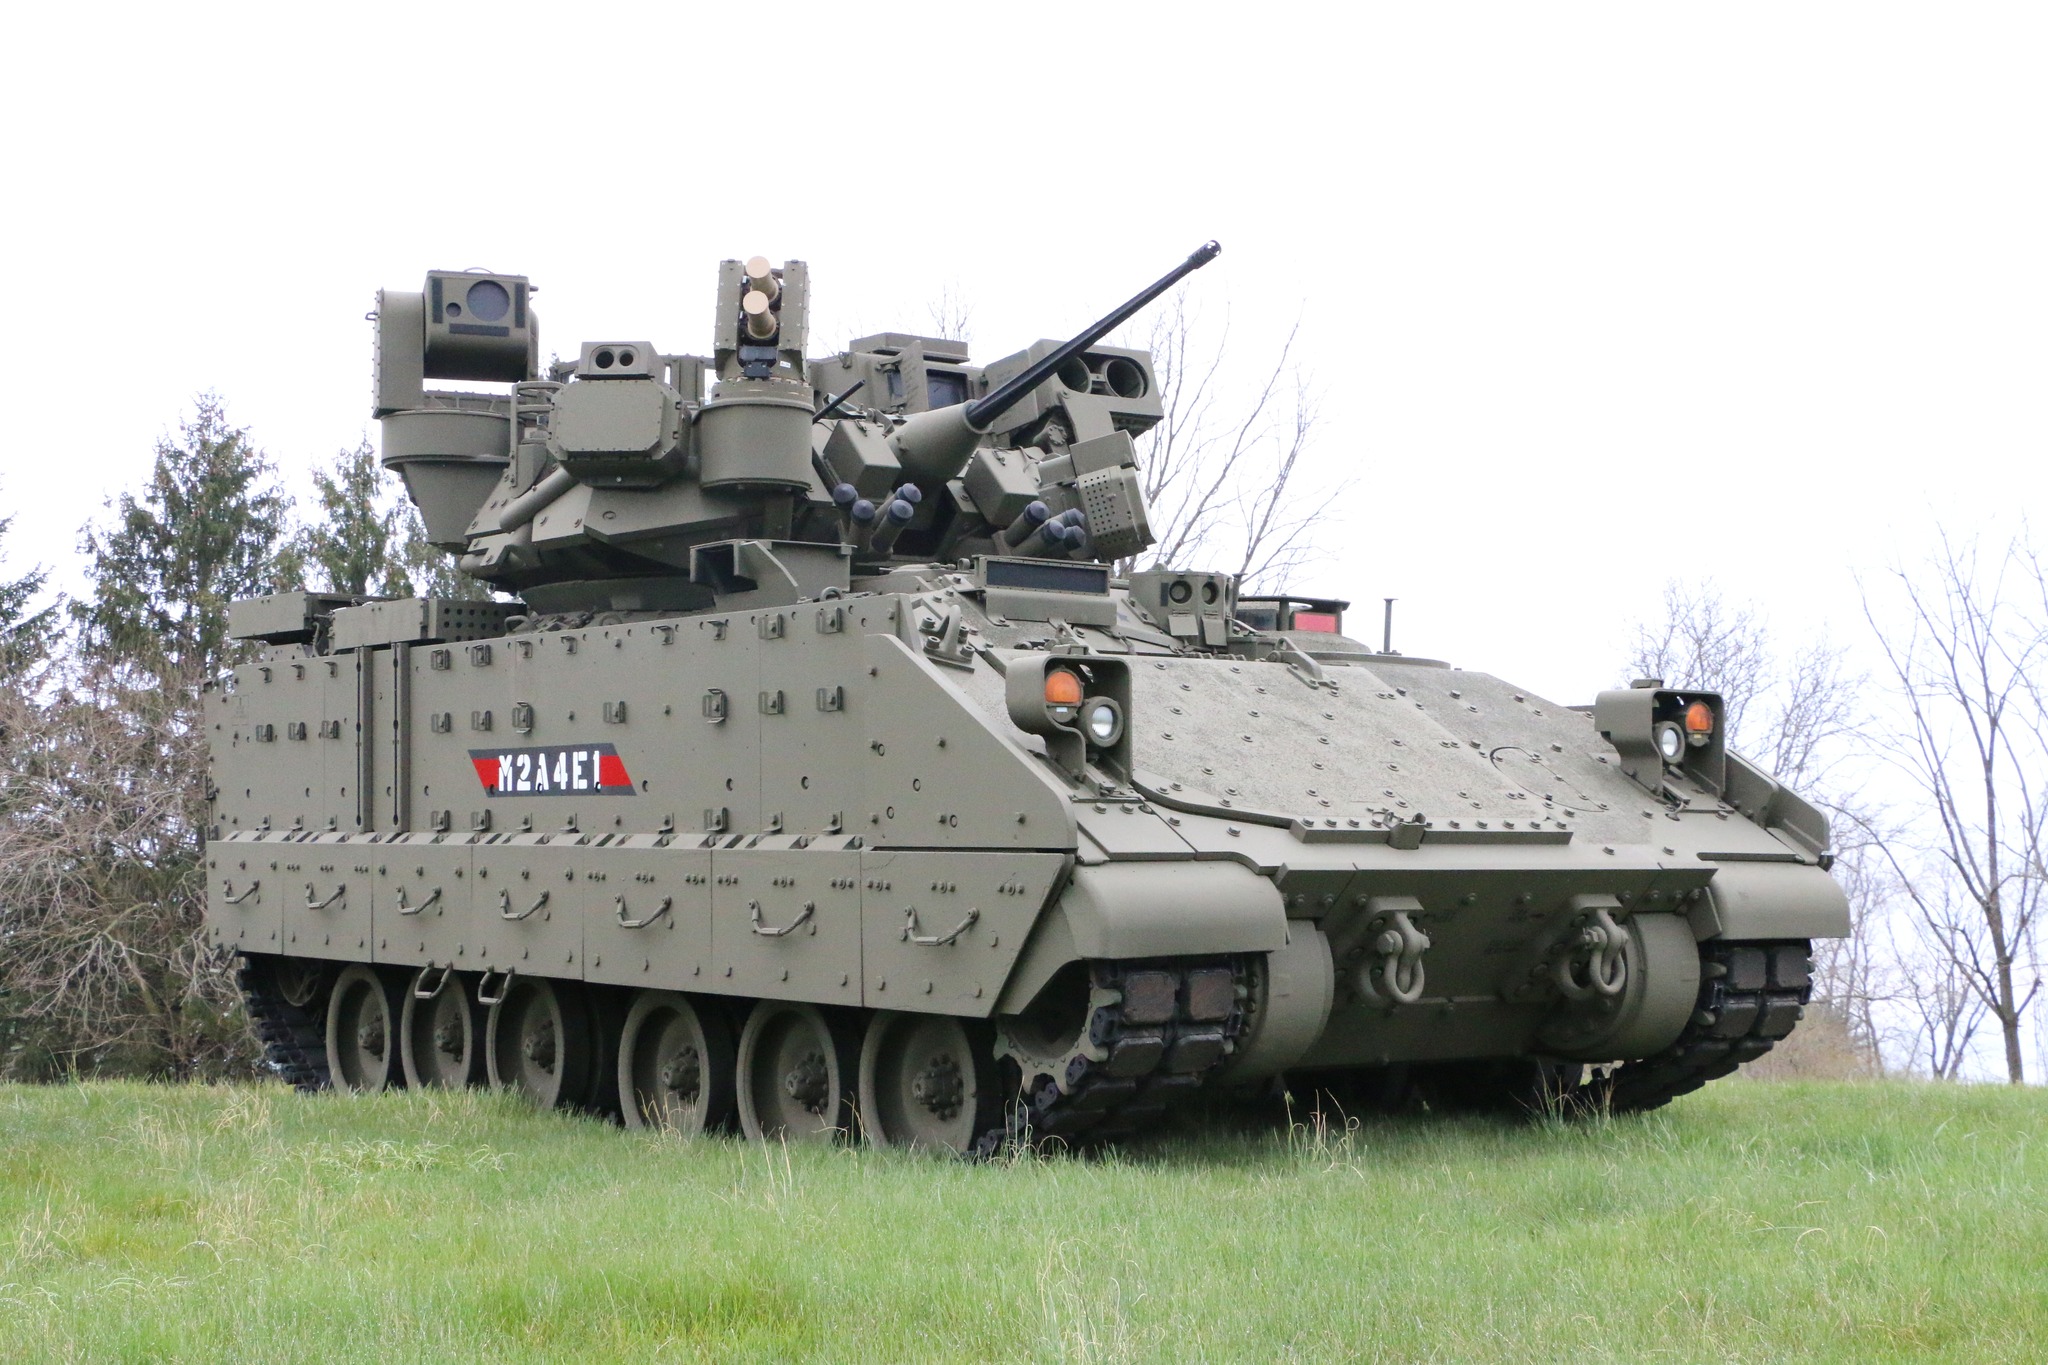 Gli Stati Uniti acquisteranno veicoli da combattimento per la fanteria Bradley in una nuova variante M2A4E1 con sistemi di controllo e difesa migliorati